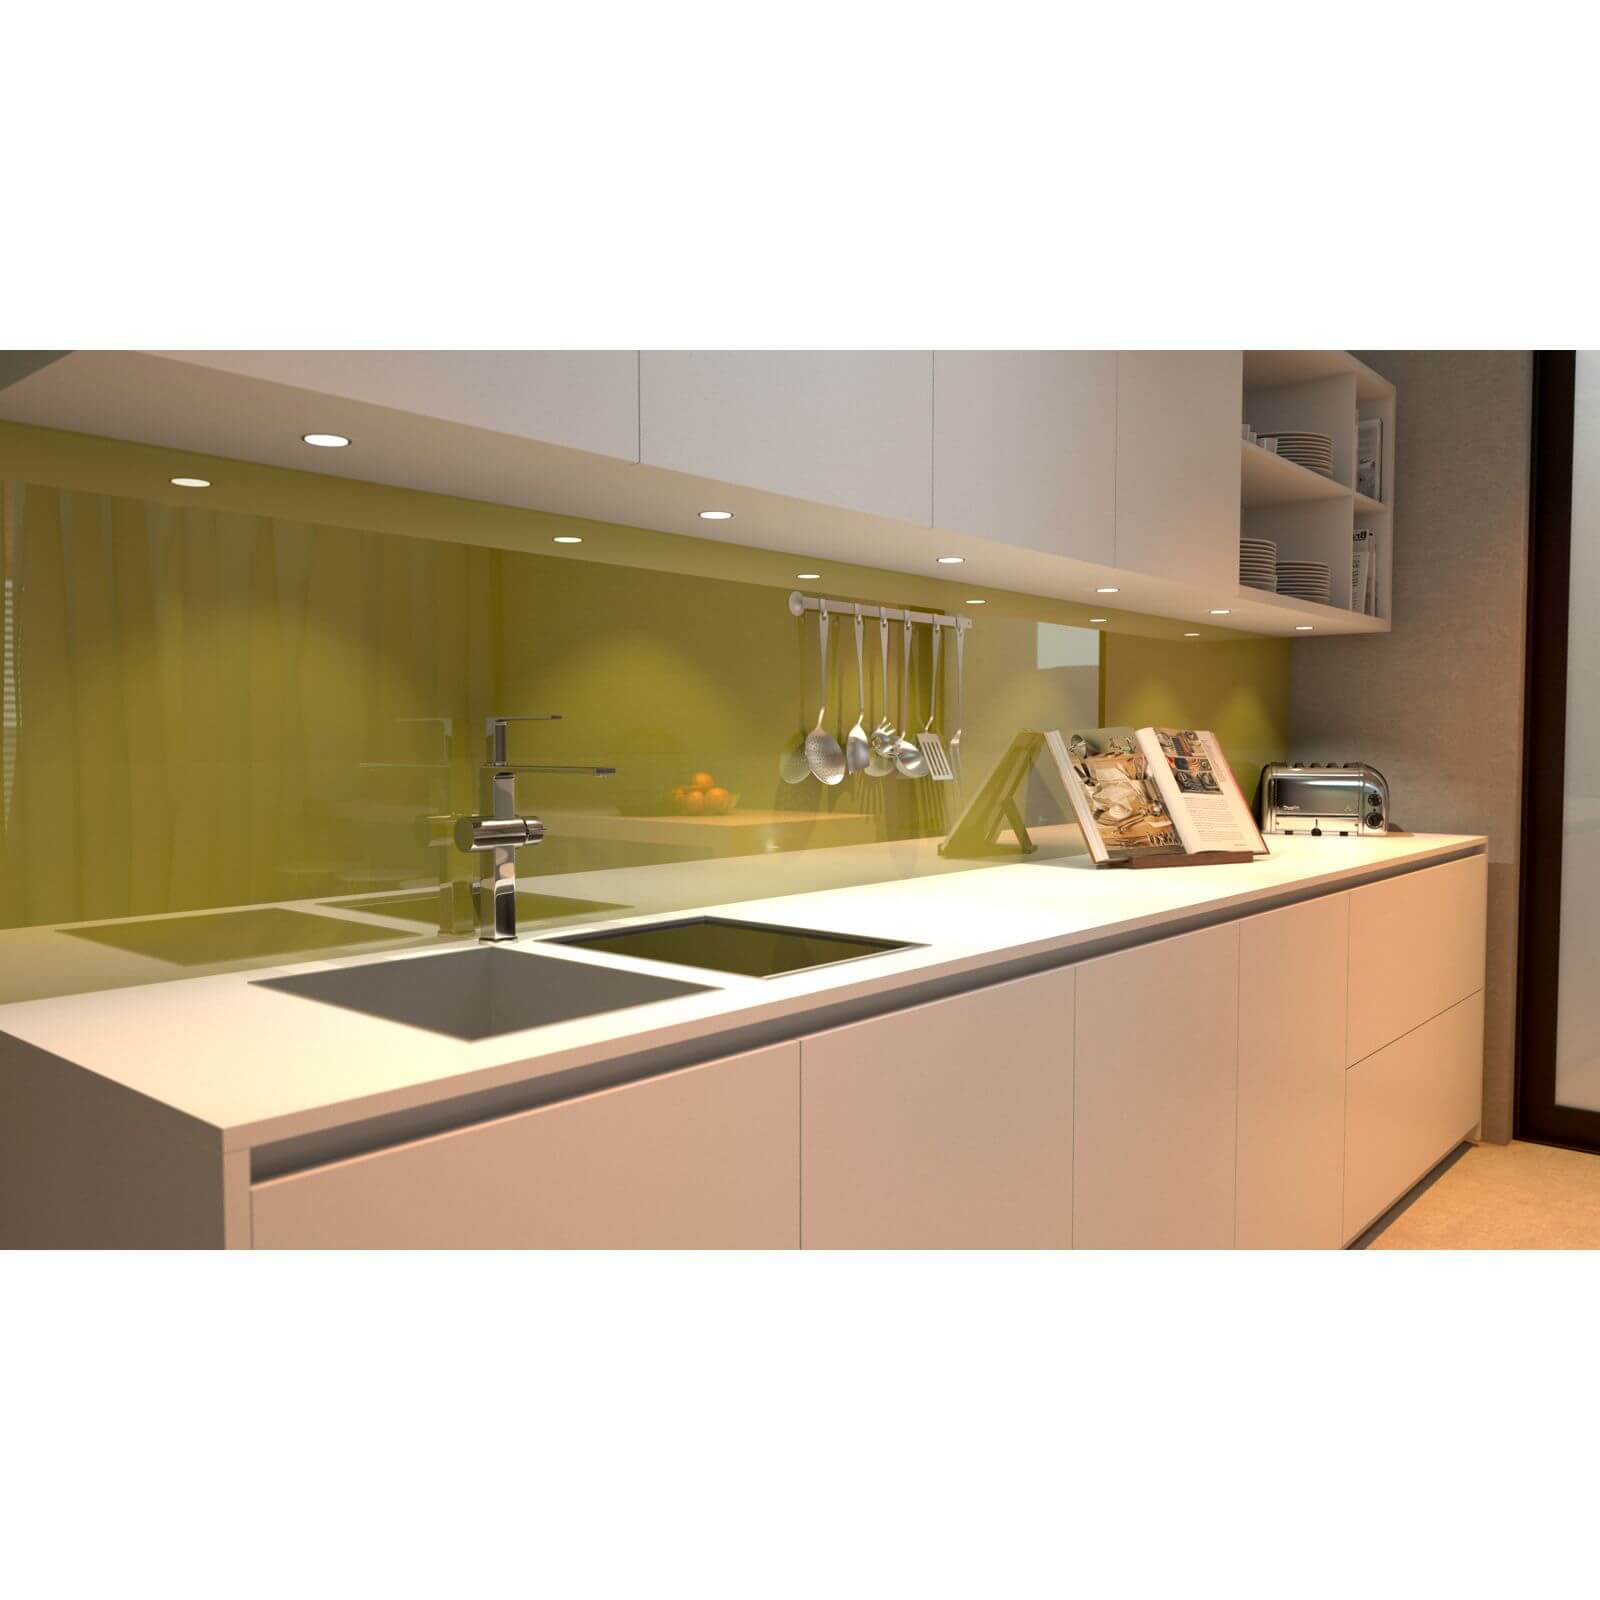 Zenolite Acrylic Kitchen Splashback Panel - 760 x 700mm - Forest